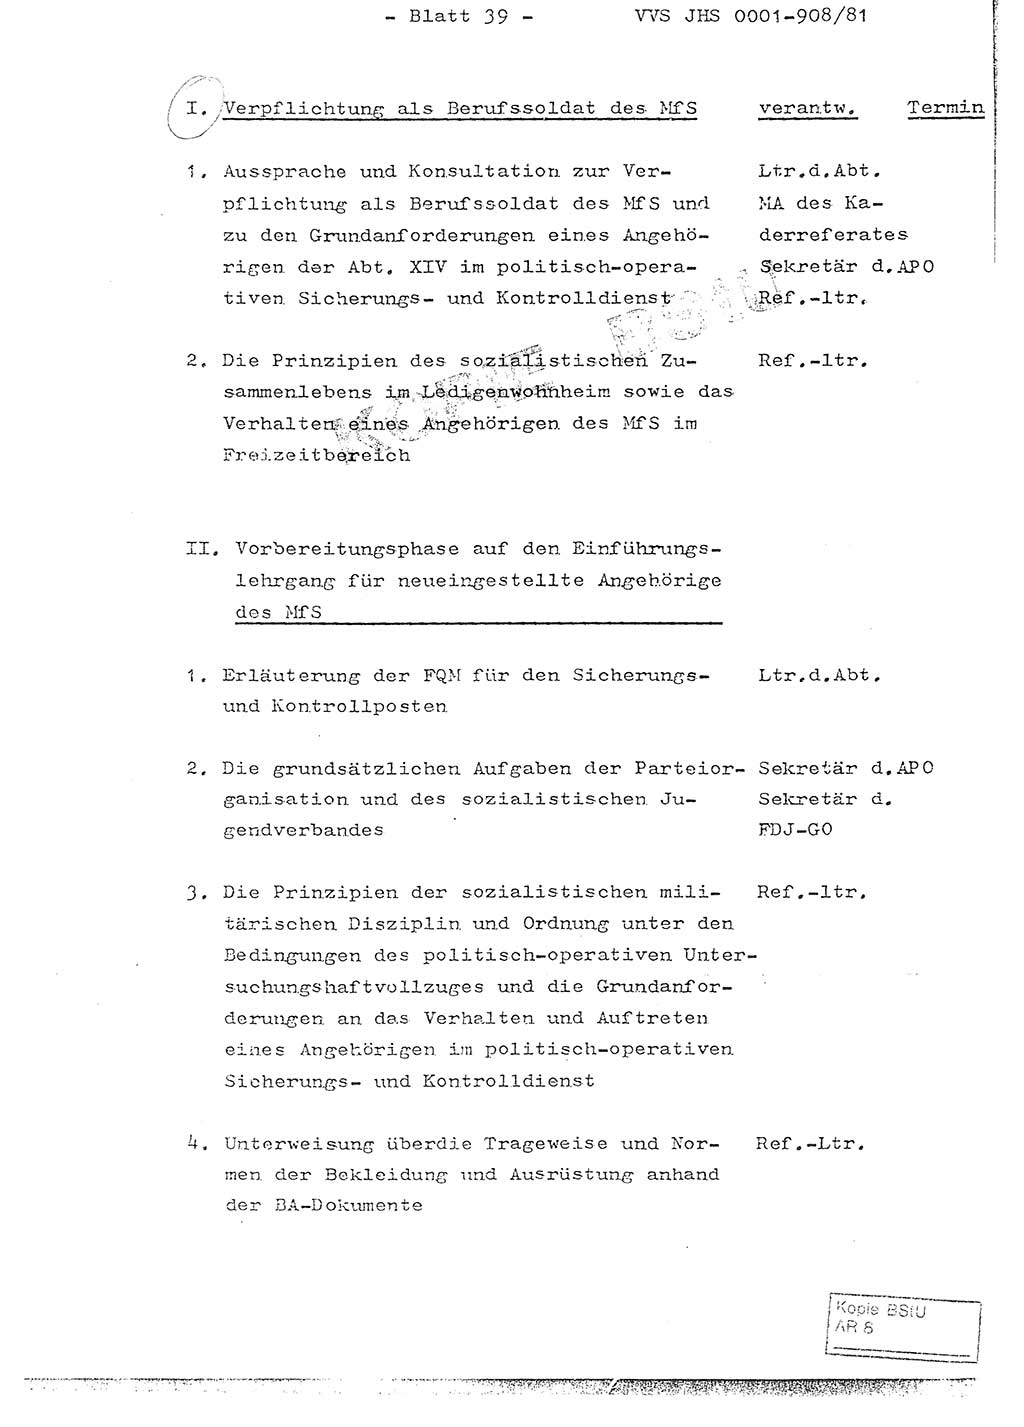 Fachschulabschlußarbeit Oberleutnant Wolfgang Wittmann (Abt. ⅩⅣ), Ministerium für Staatssicherheit (MfS) [Deutsche Demokratische Republik (DDR)], Juristische Hochschule (JHS), Vertrauliche Verschlußsache (VVS) o001-908/82, Potsdam 1982, Blatt 39 (FS-Abschl.-Arb. MfS DDR JHS VVS o001-908/82 1982, Bl. 39)